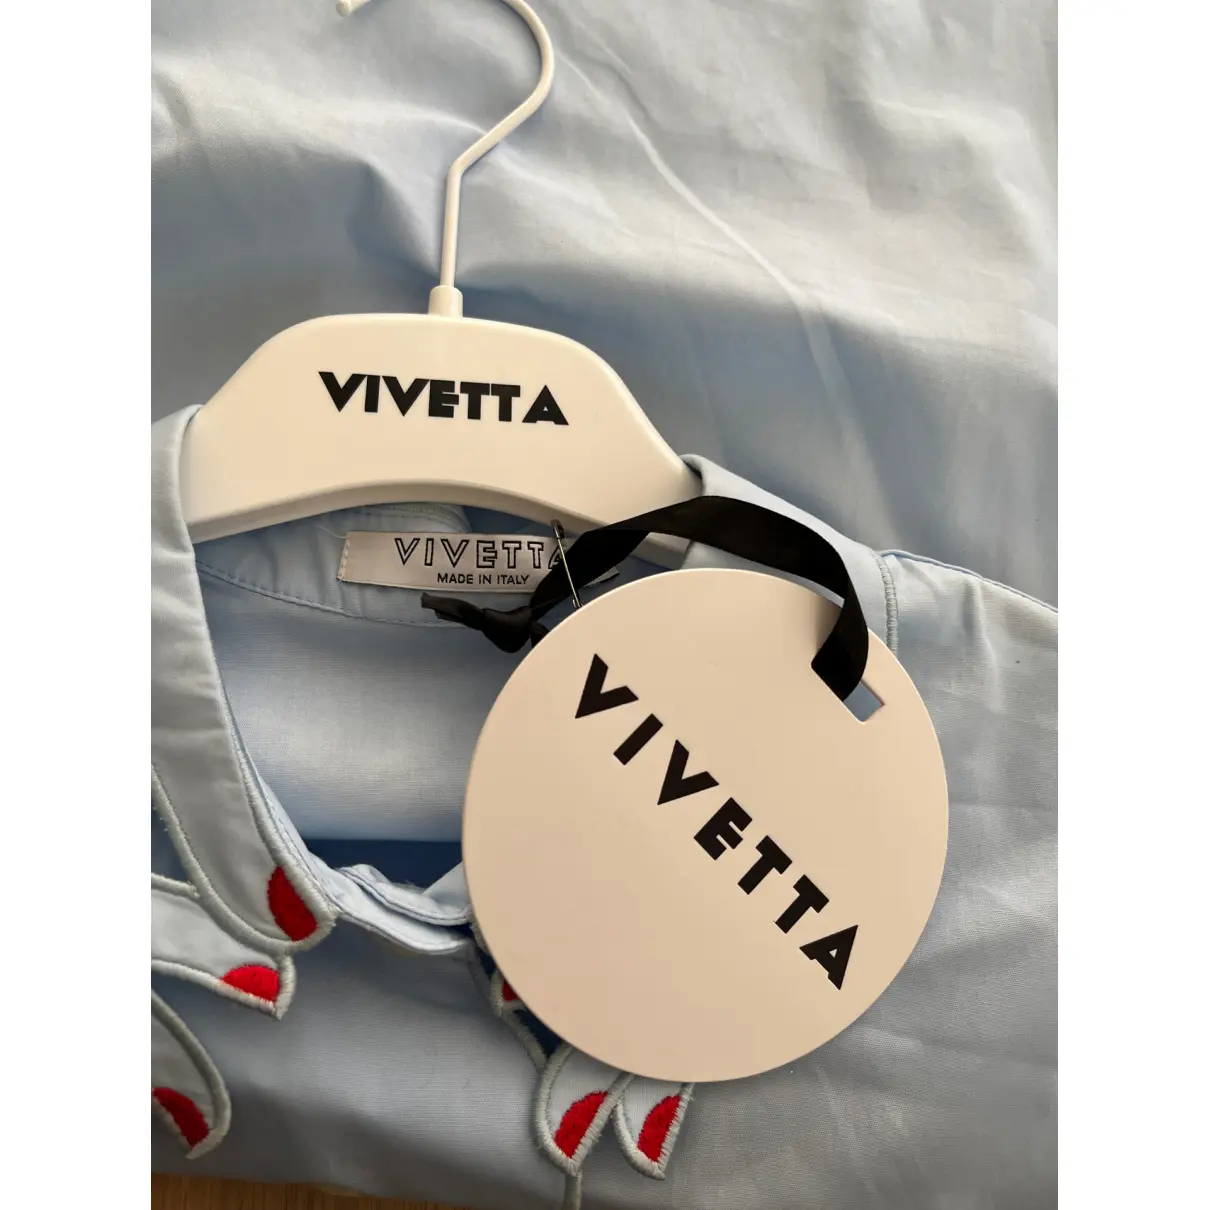 Buy Vivetta Shirt online